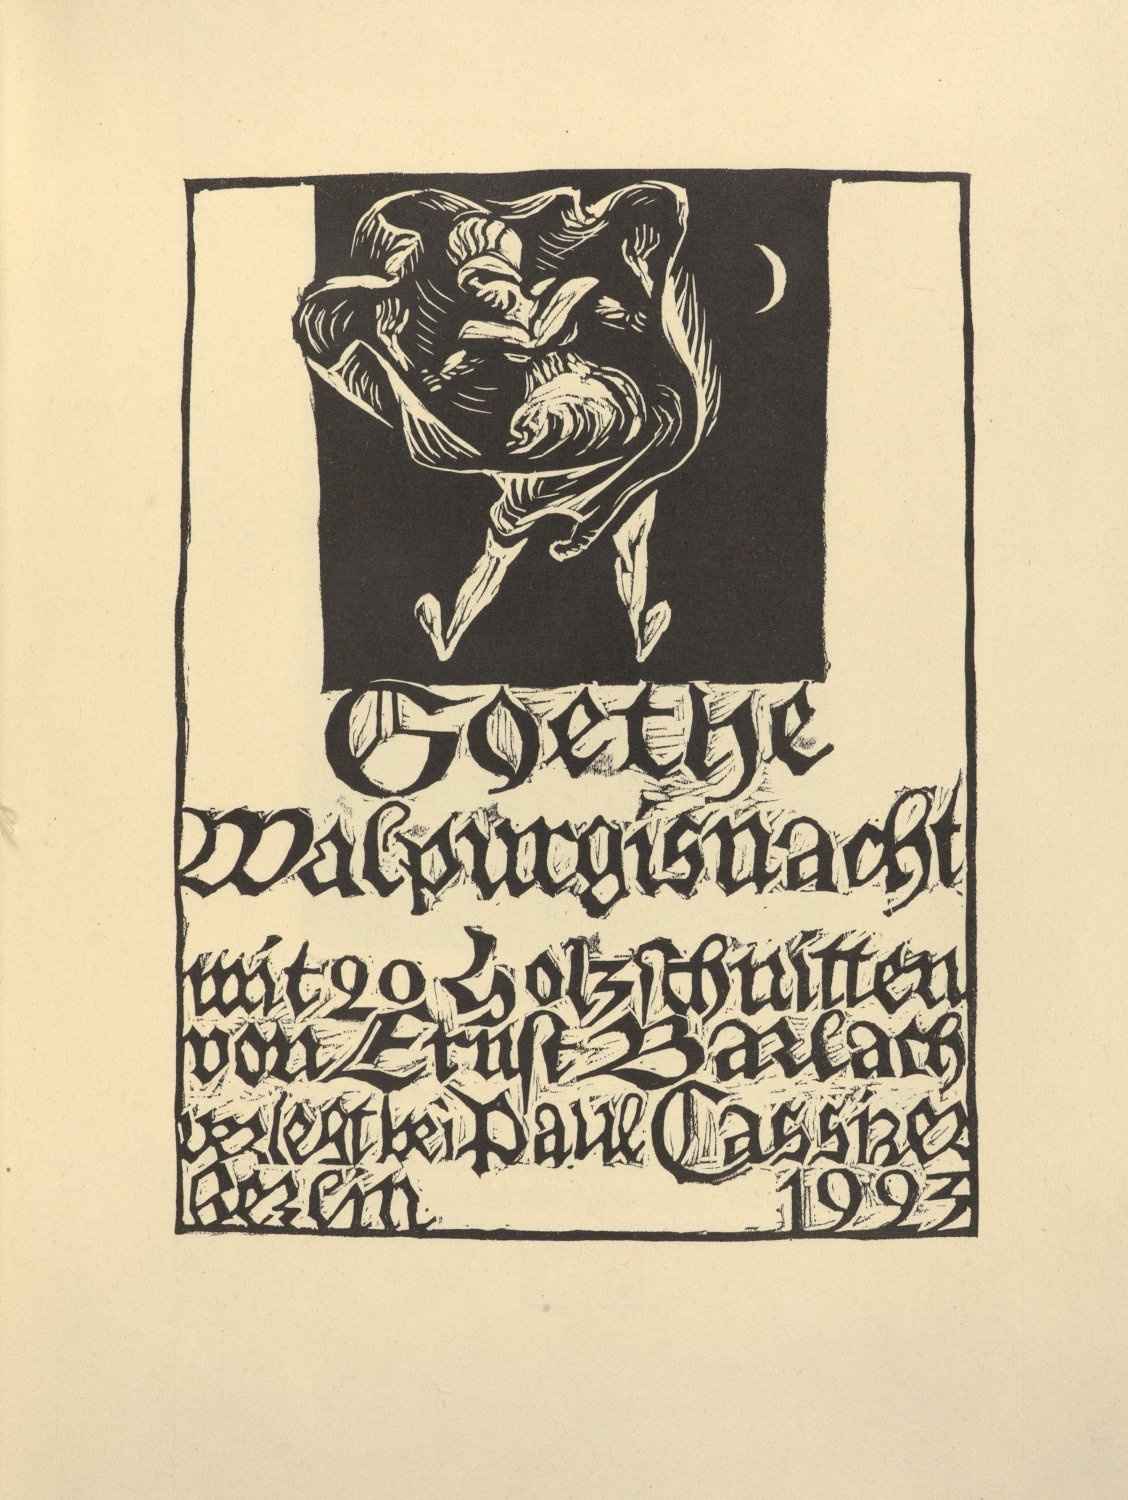 Goethe / Walpurgisnacht. mit 20 Holzschnitten / von Ernst Barlach / verlegt bei Paul Cassirer / Berlin 1923 (Freies Deutsches Hochstift / Frankfurter Goethe-Museum CC BY-NC-SA)